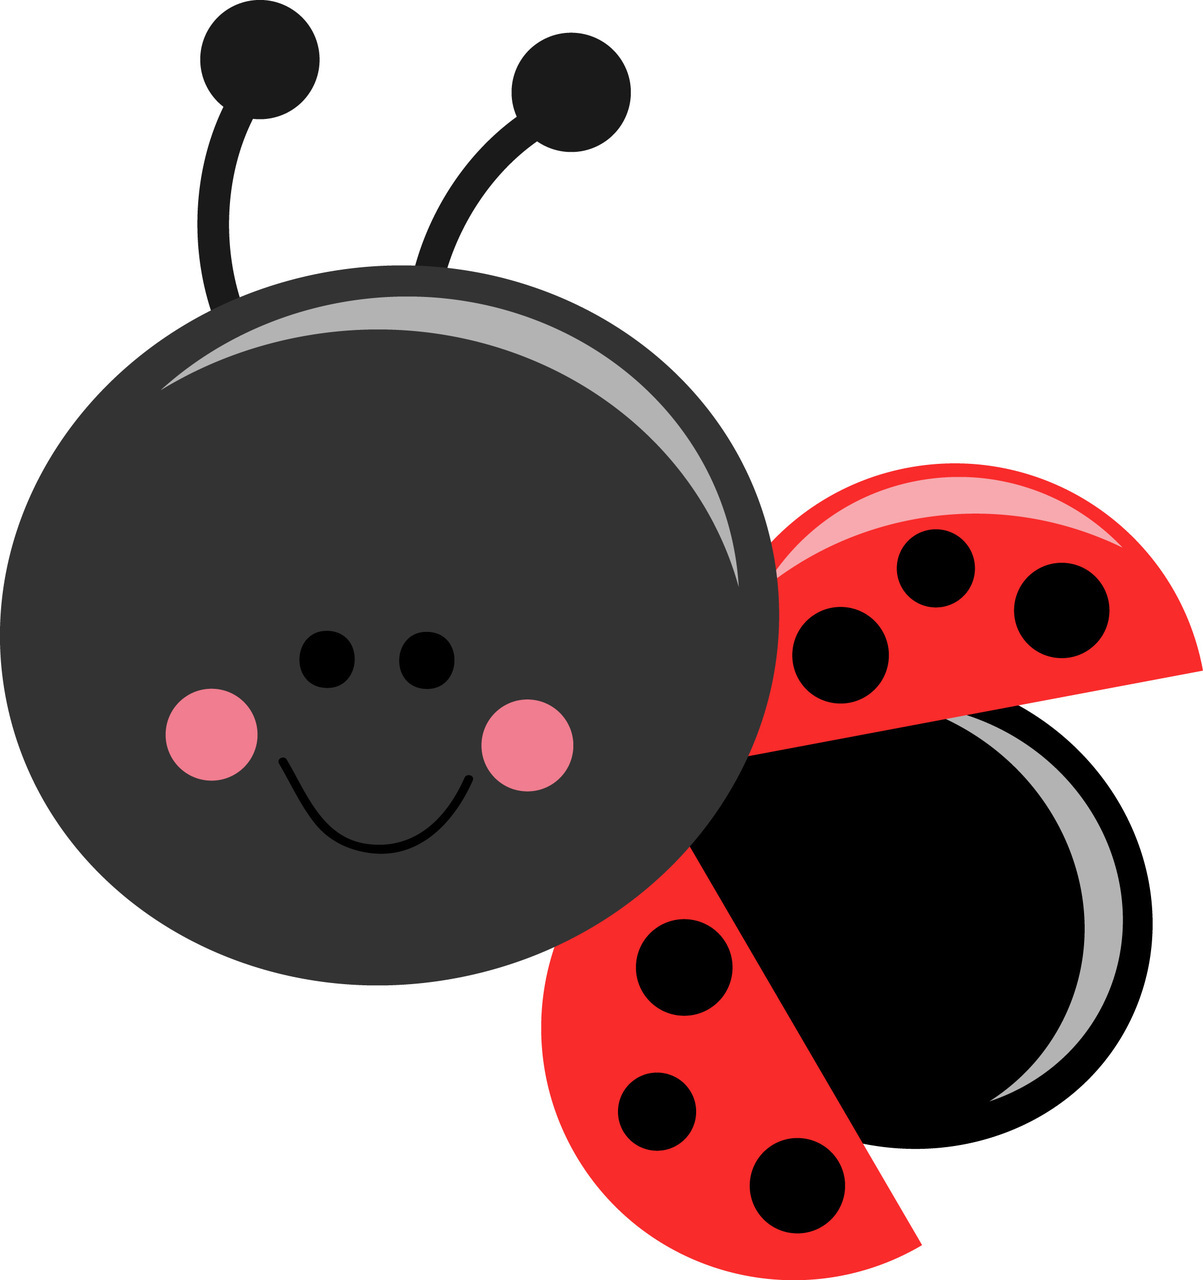 Ladybug cliparts